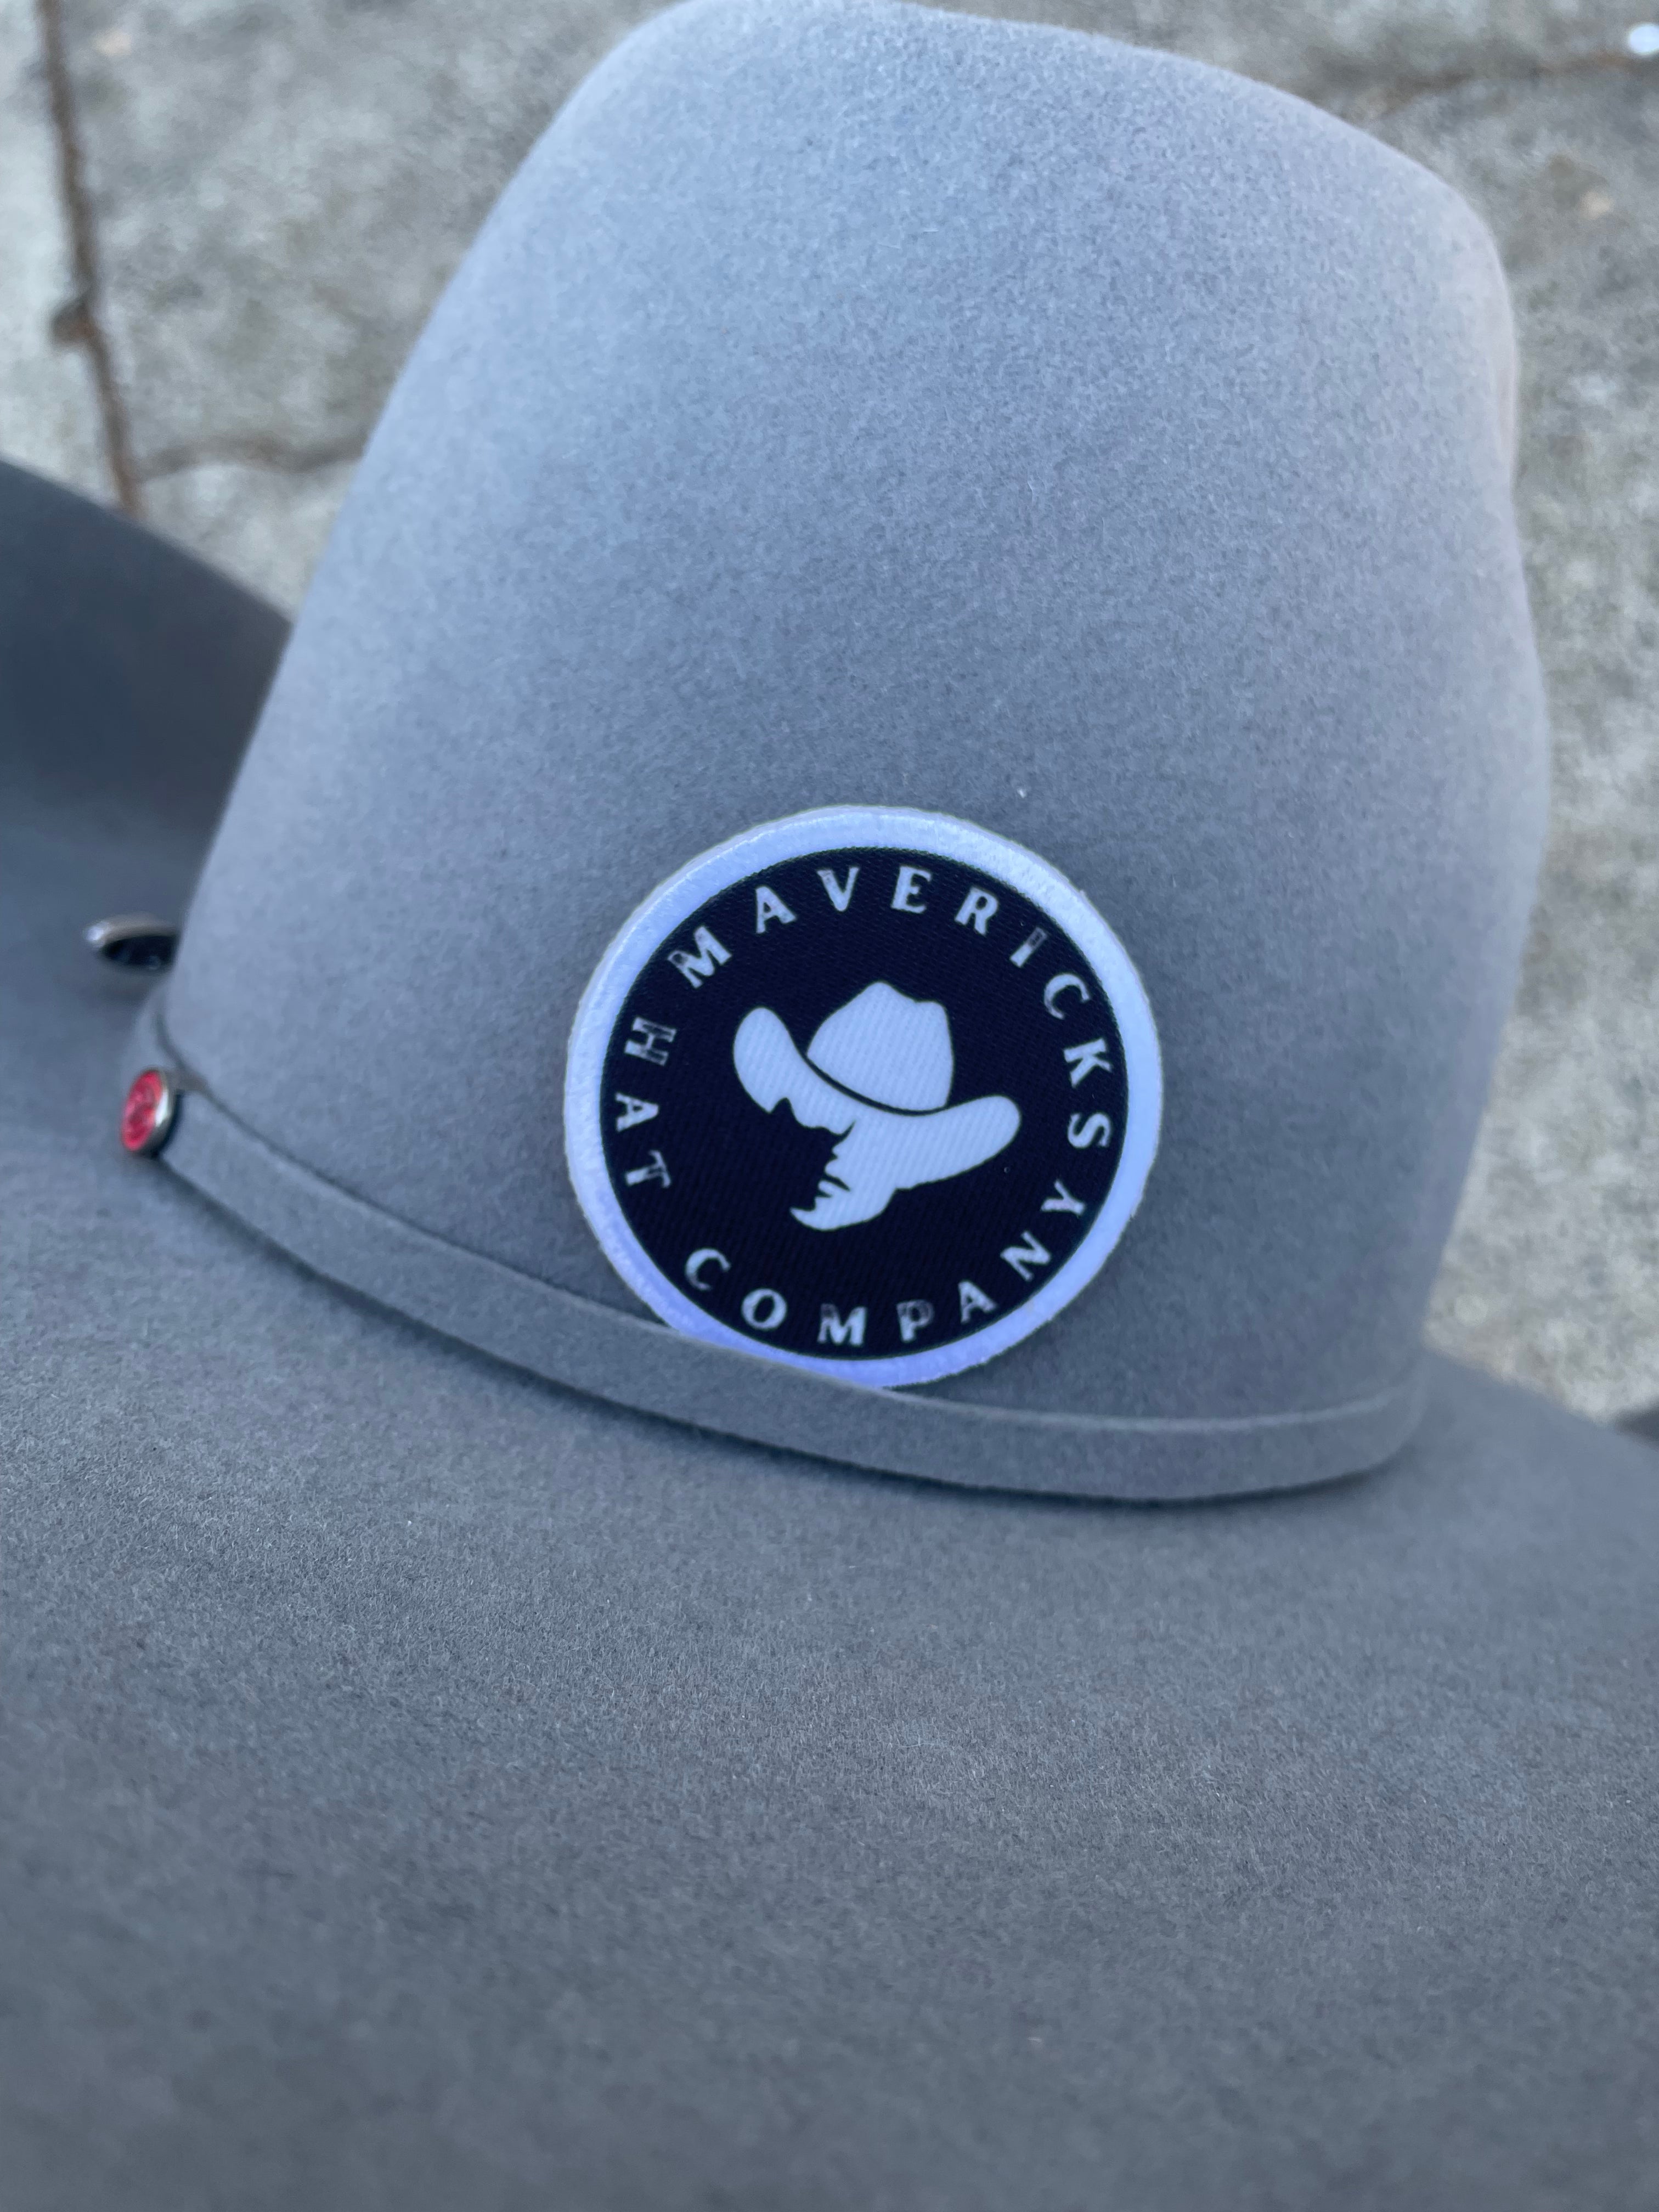 Mavericks Hat Company Patch